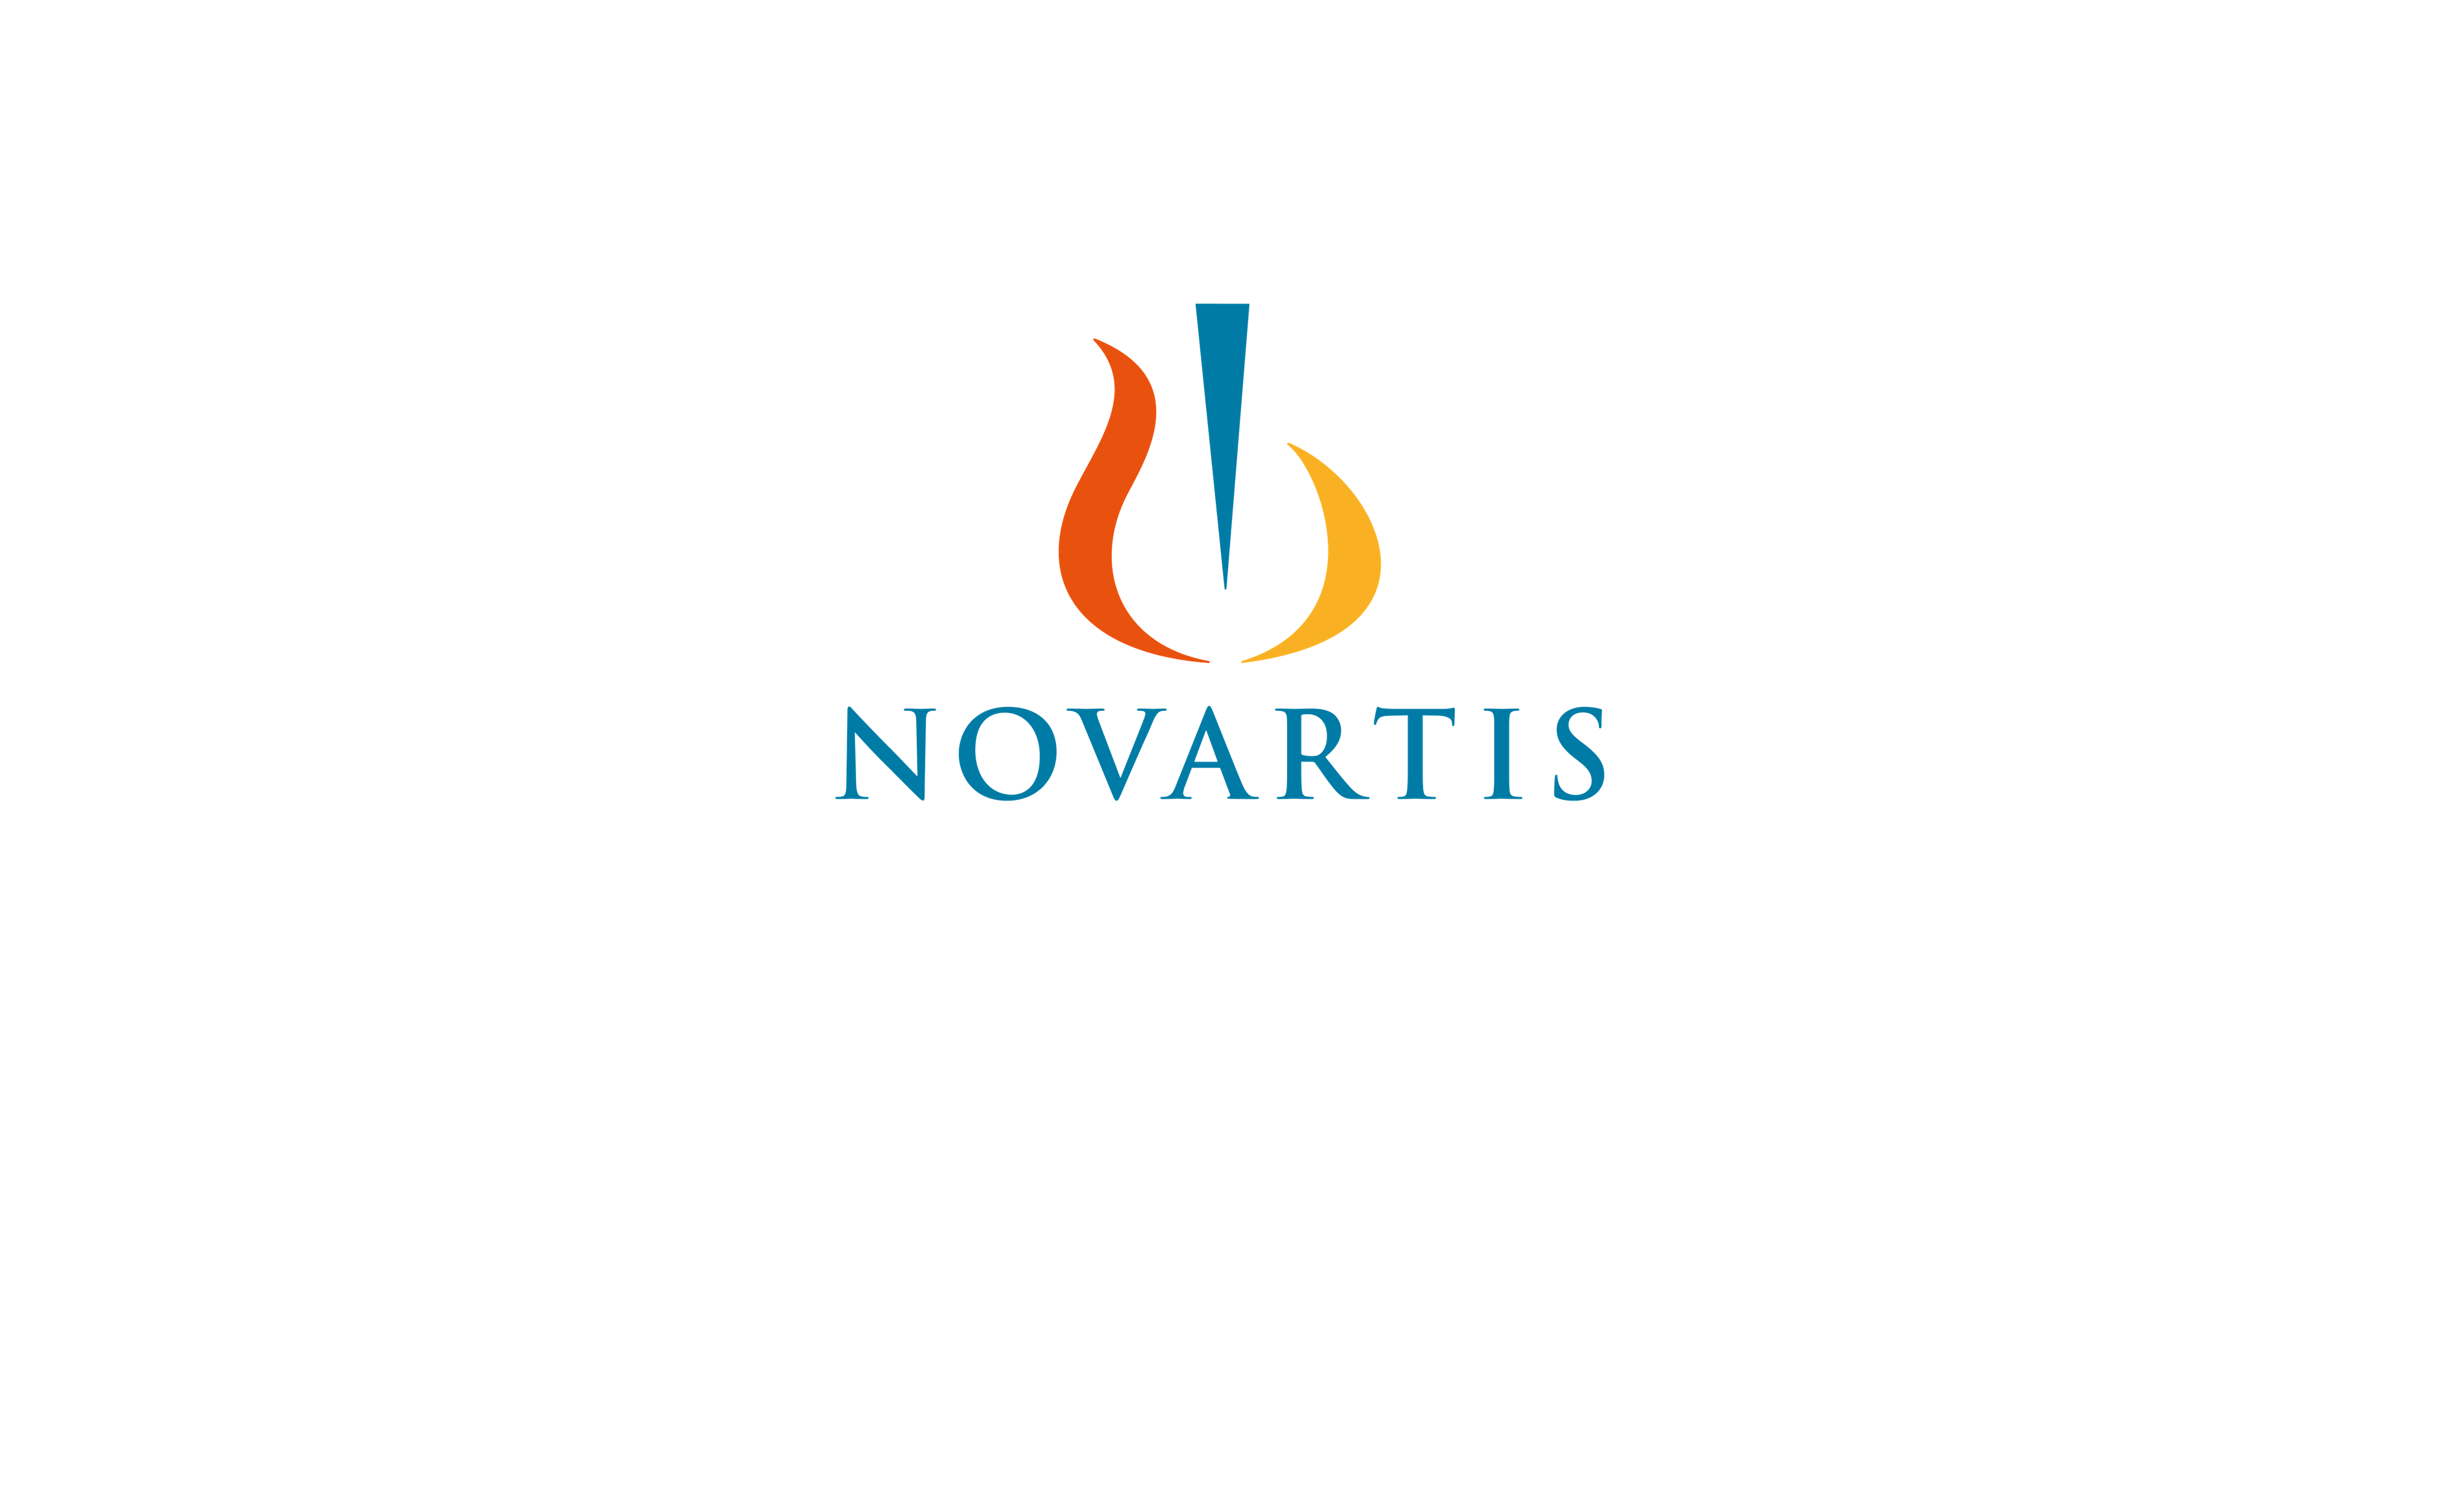 novartis png logo 10 free Cliparts | Download images on ...